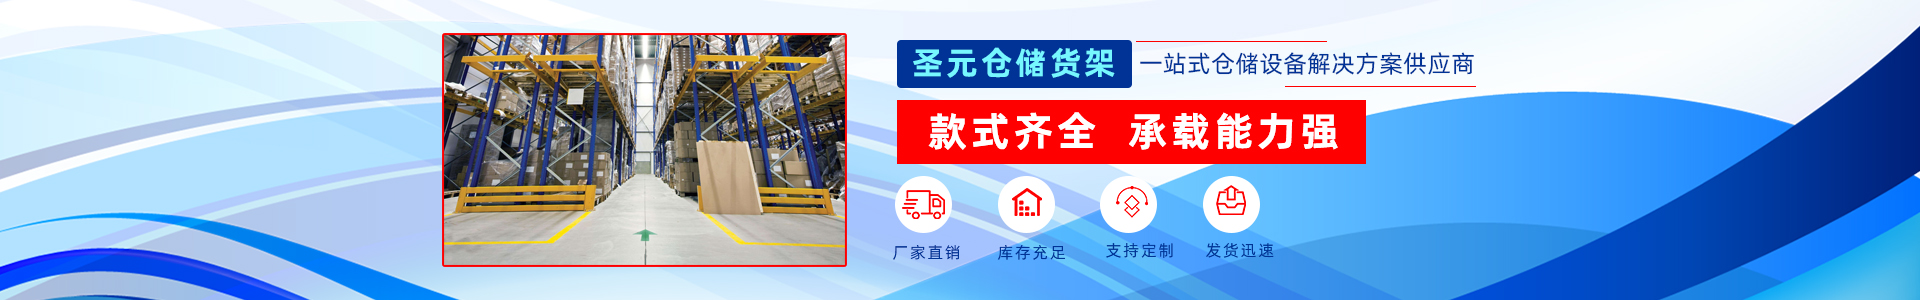 北京圣元恒业货架制造有限公司案例